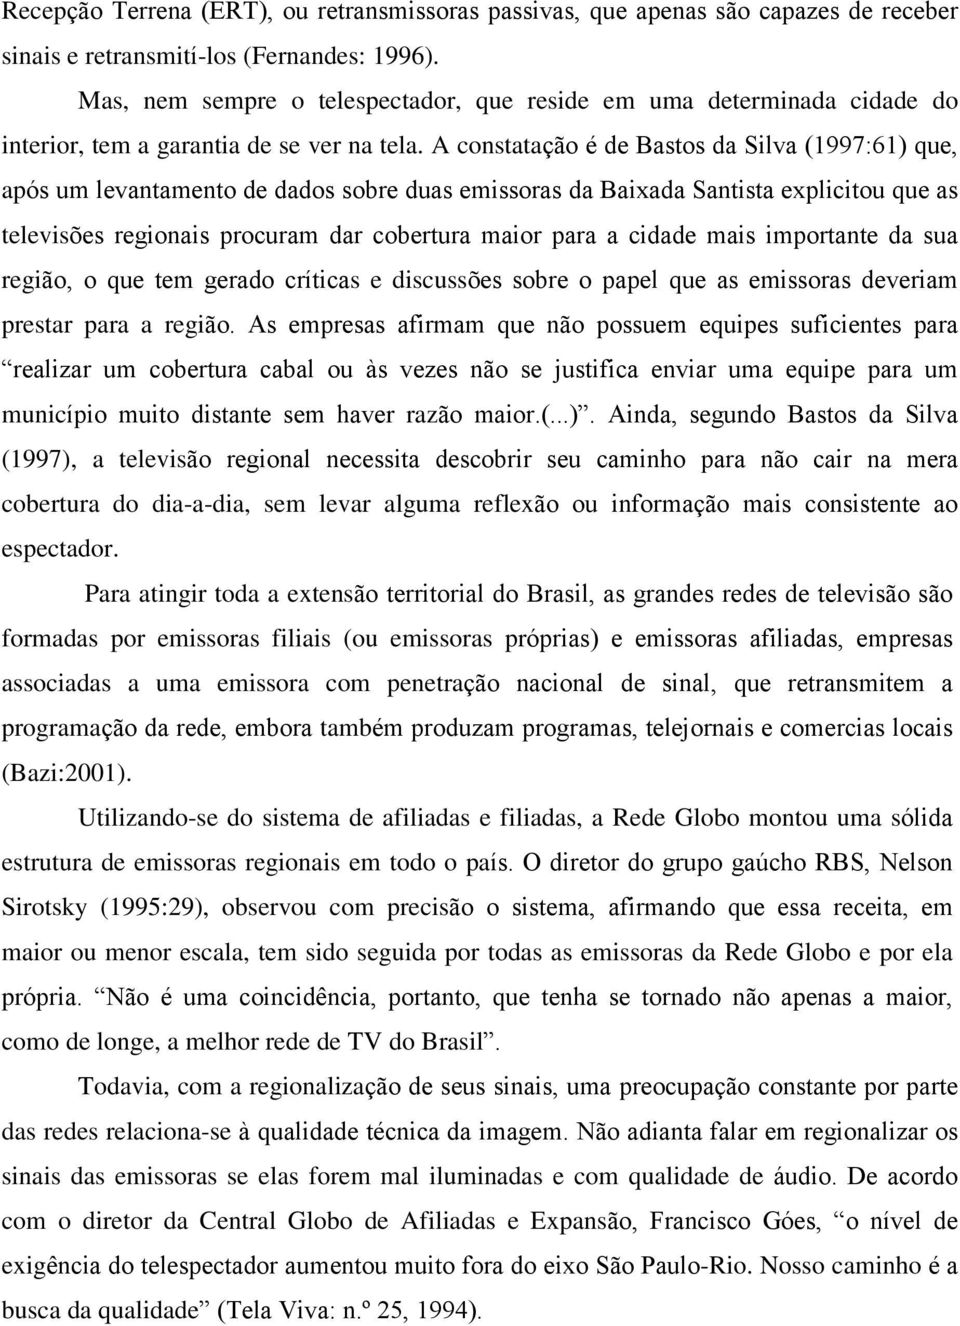 A constatação é de Bastos da Silva (1997:61) que, após um levantamento de dados sobre duas emissoras da Baixada Santista explicitou que as televisões regionais procuram dar cobertura maior para a